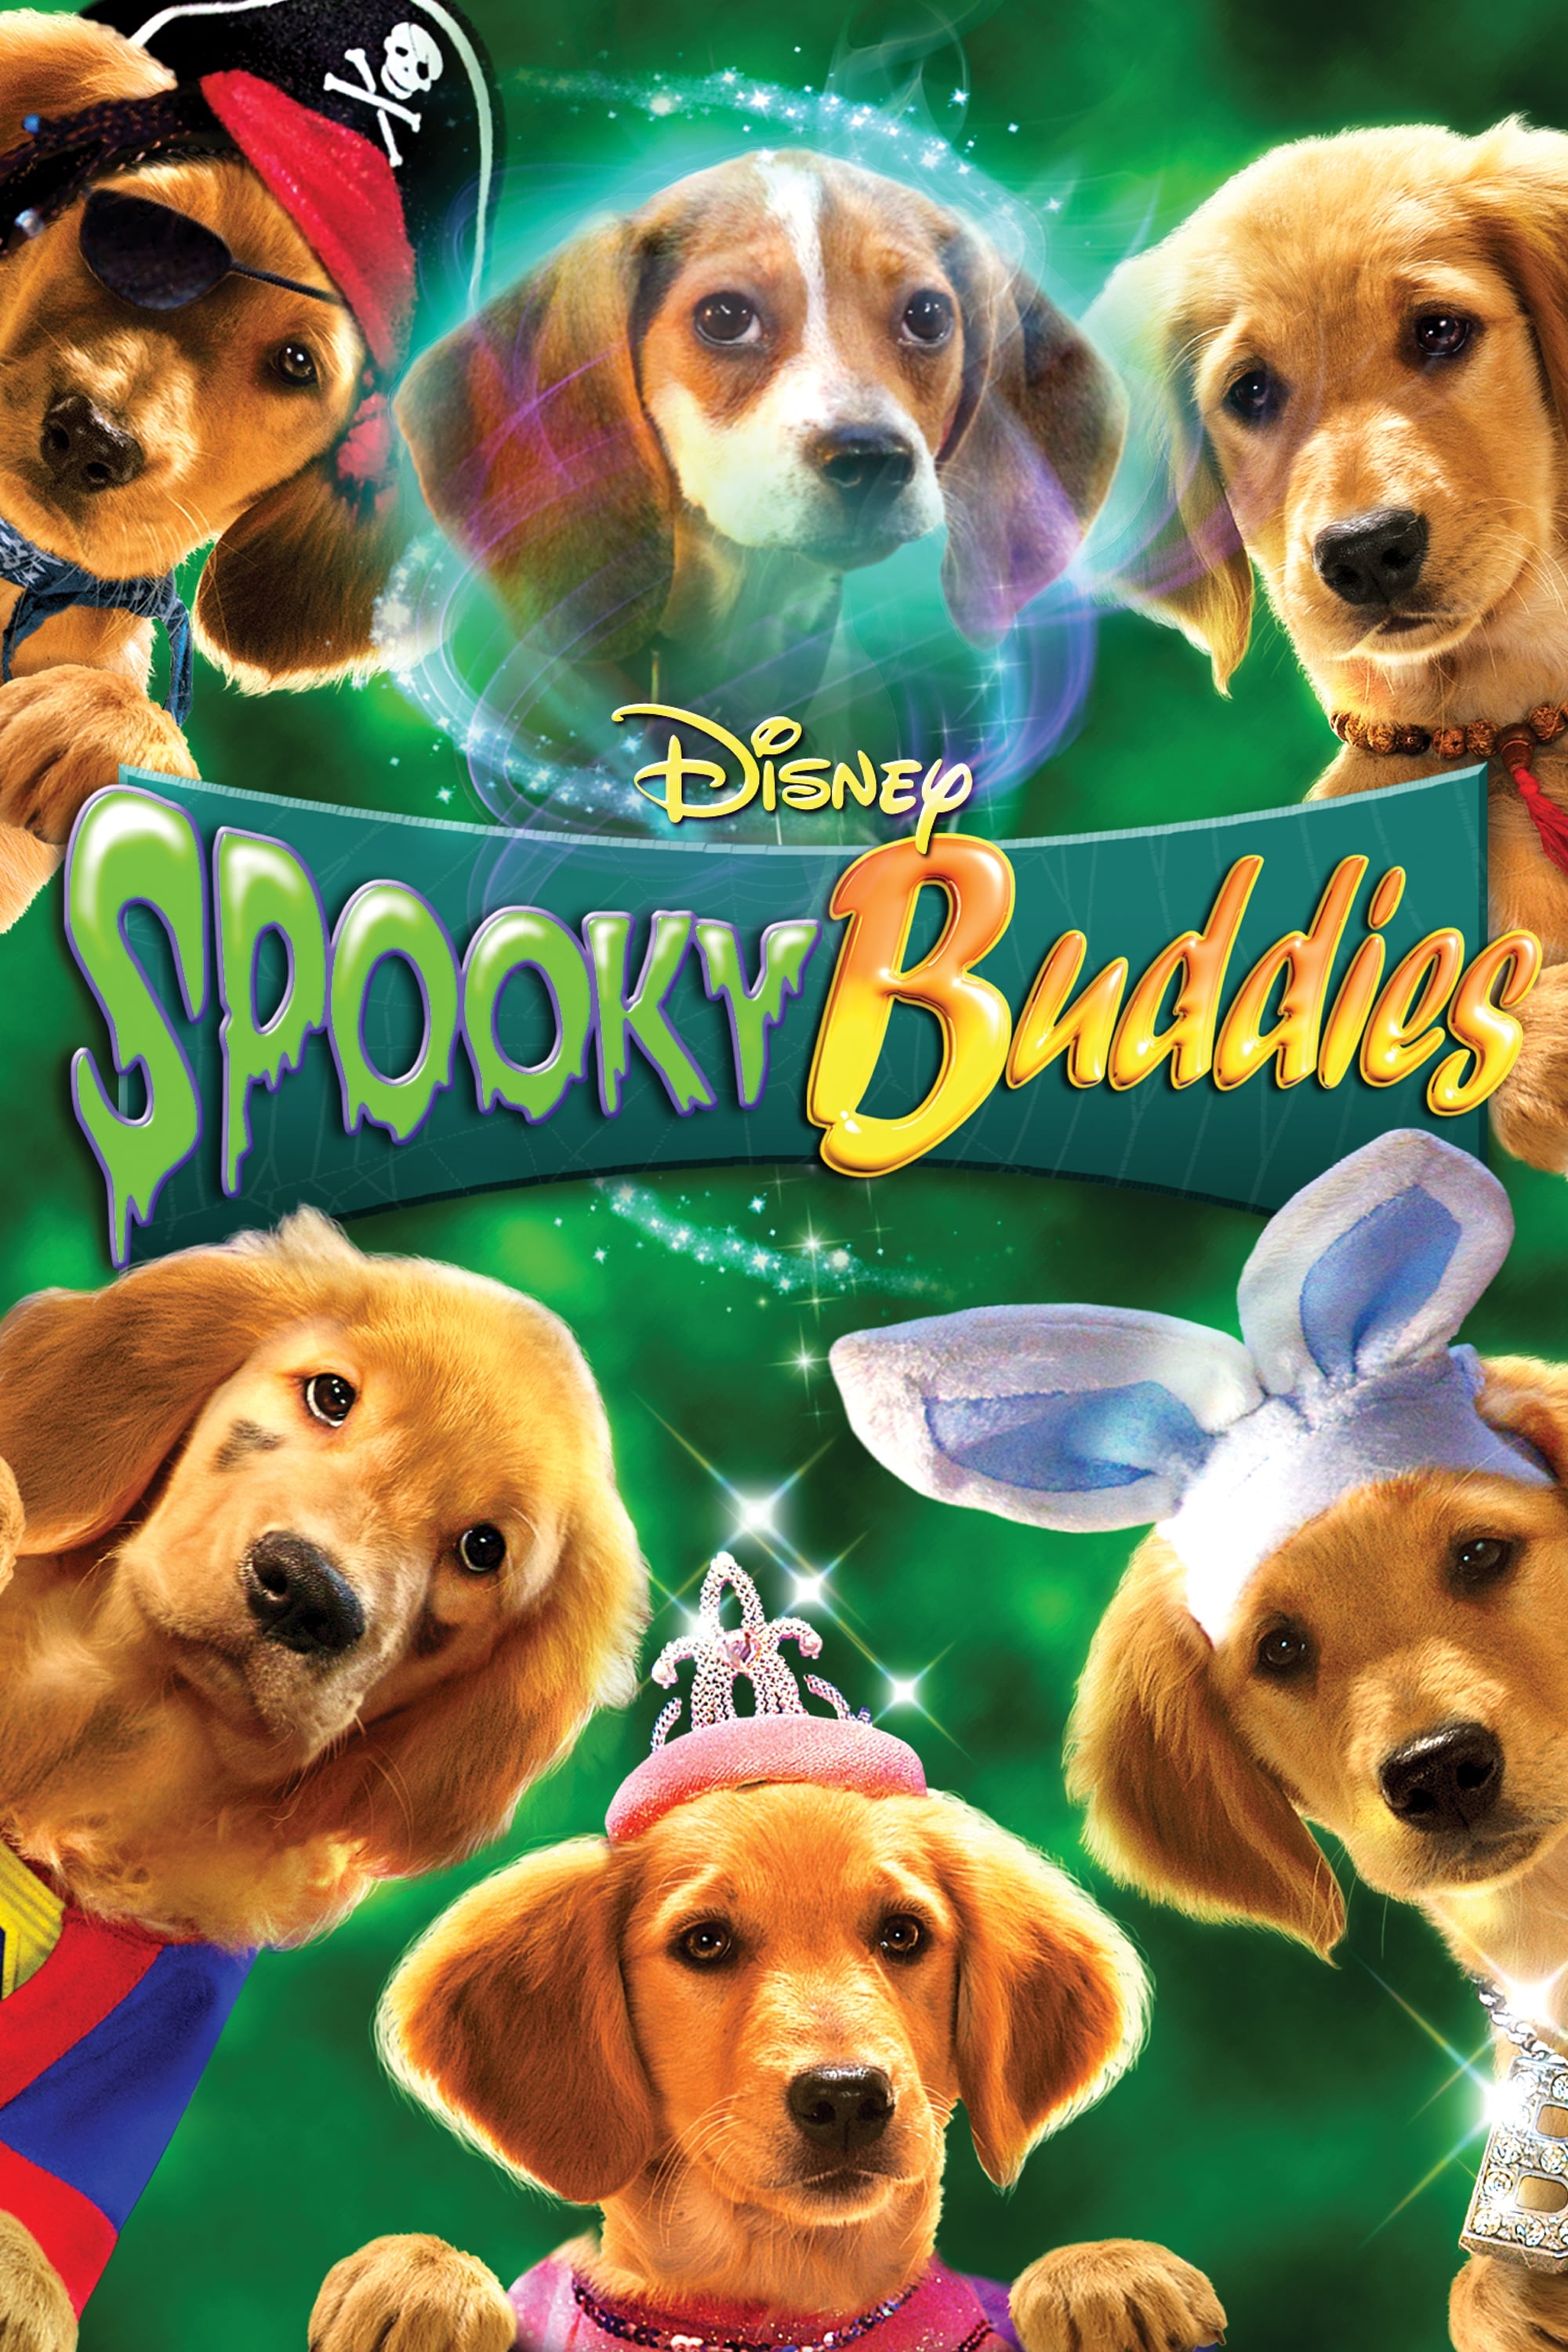 Spooky Buddies (2011)